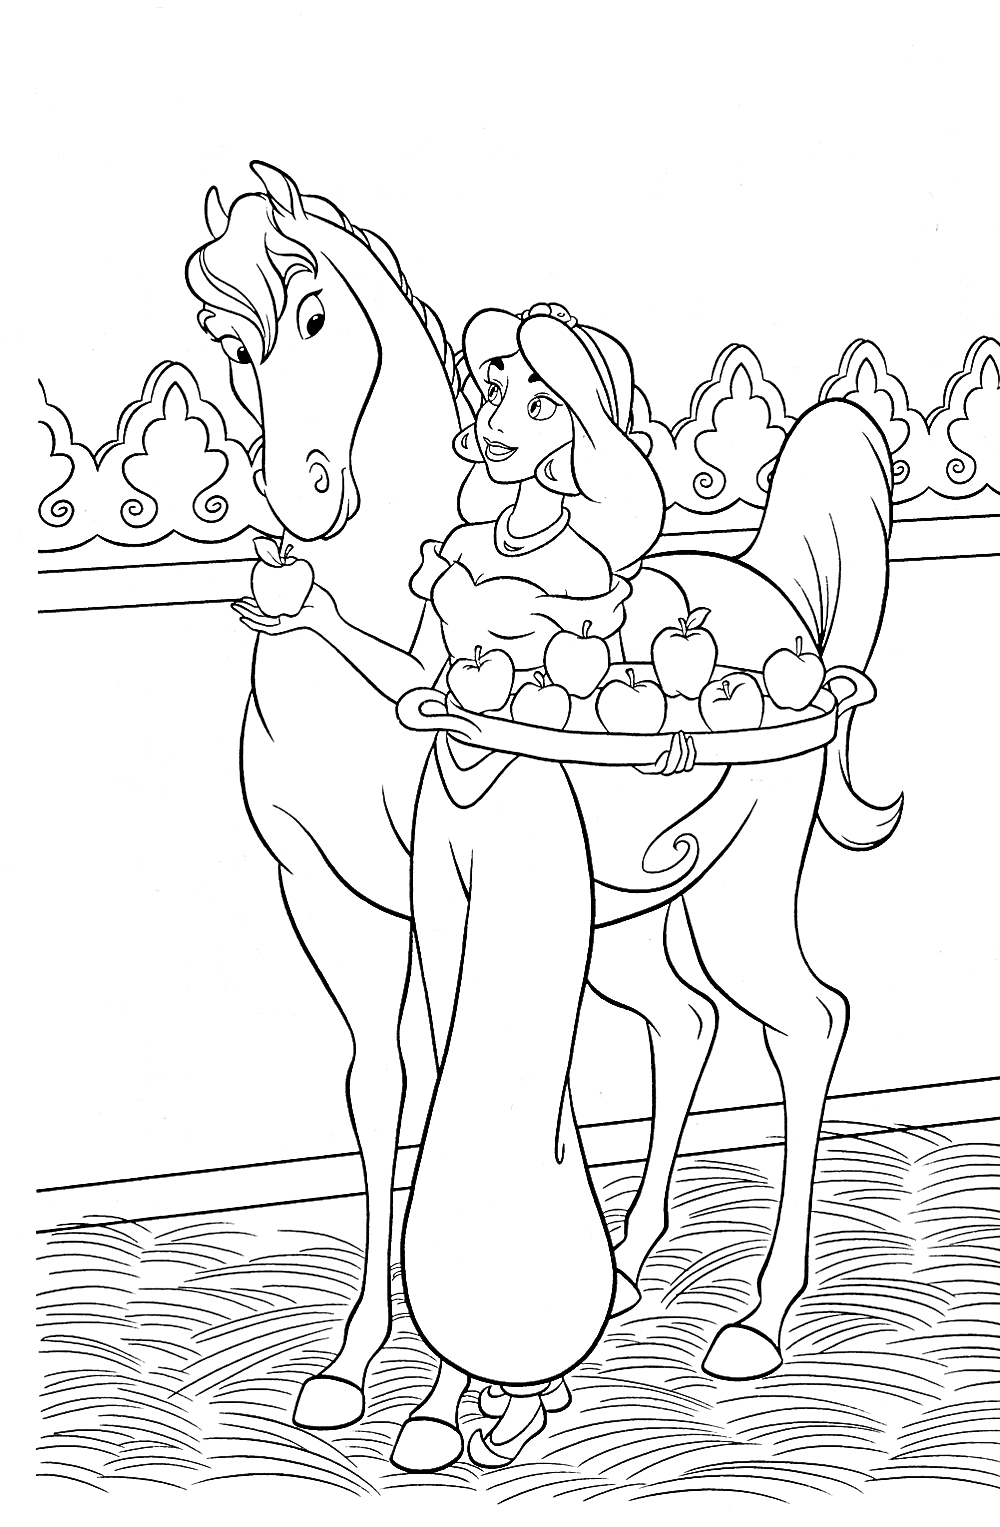 Жасмин с подносом яблок кормит коня на фоне украшенной стены